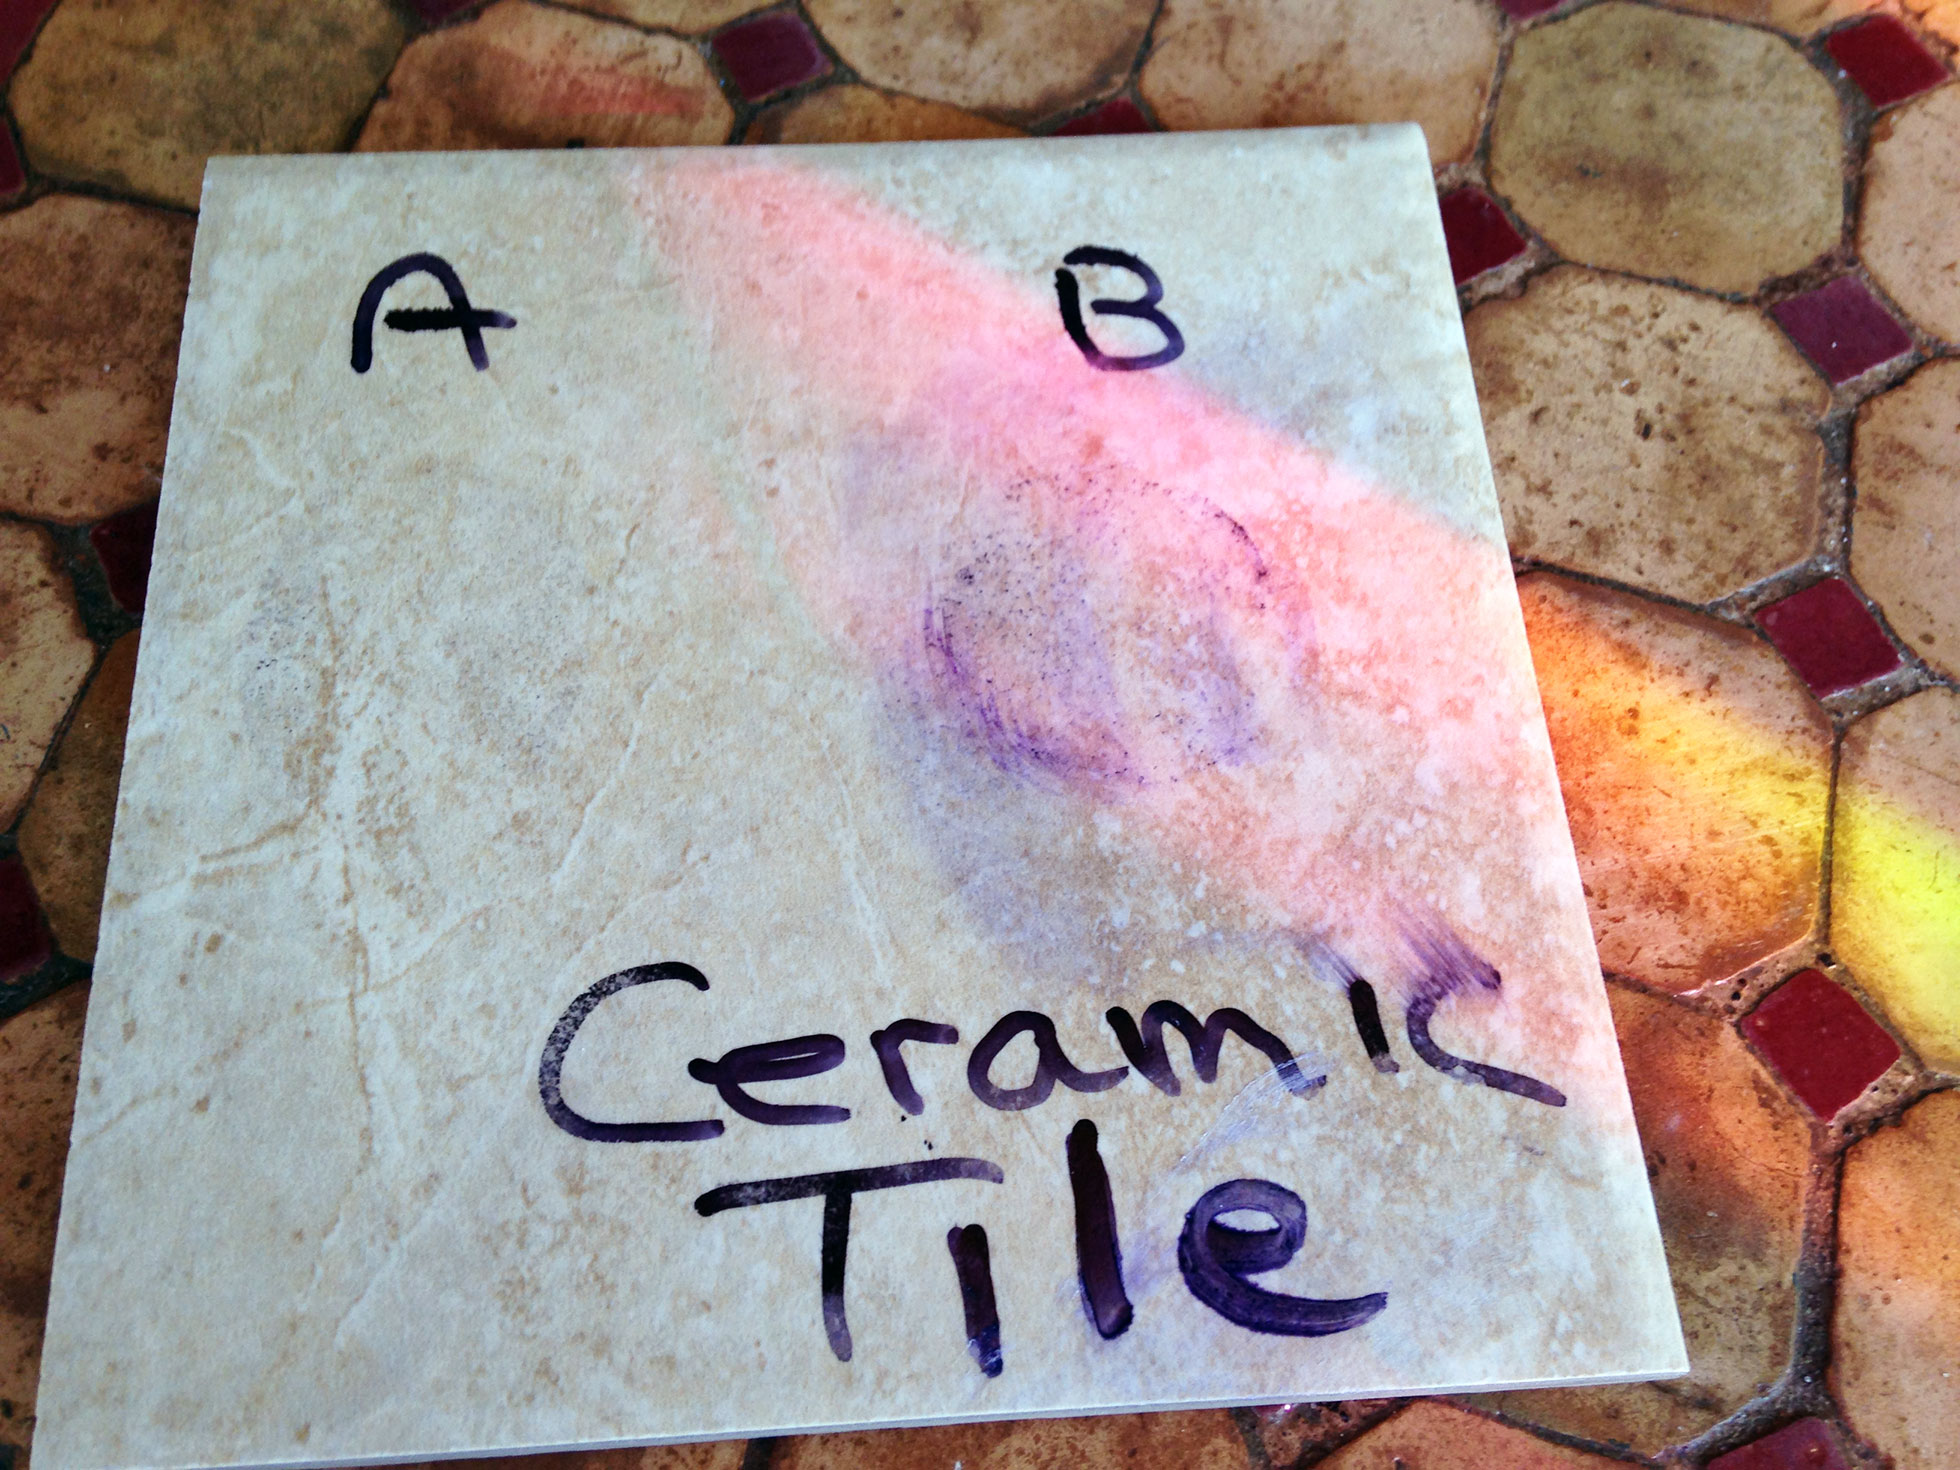 Ceramic tile floor cleaner DIY test after